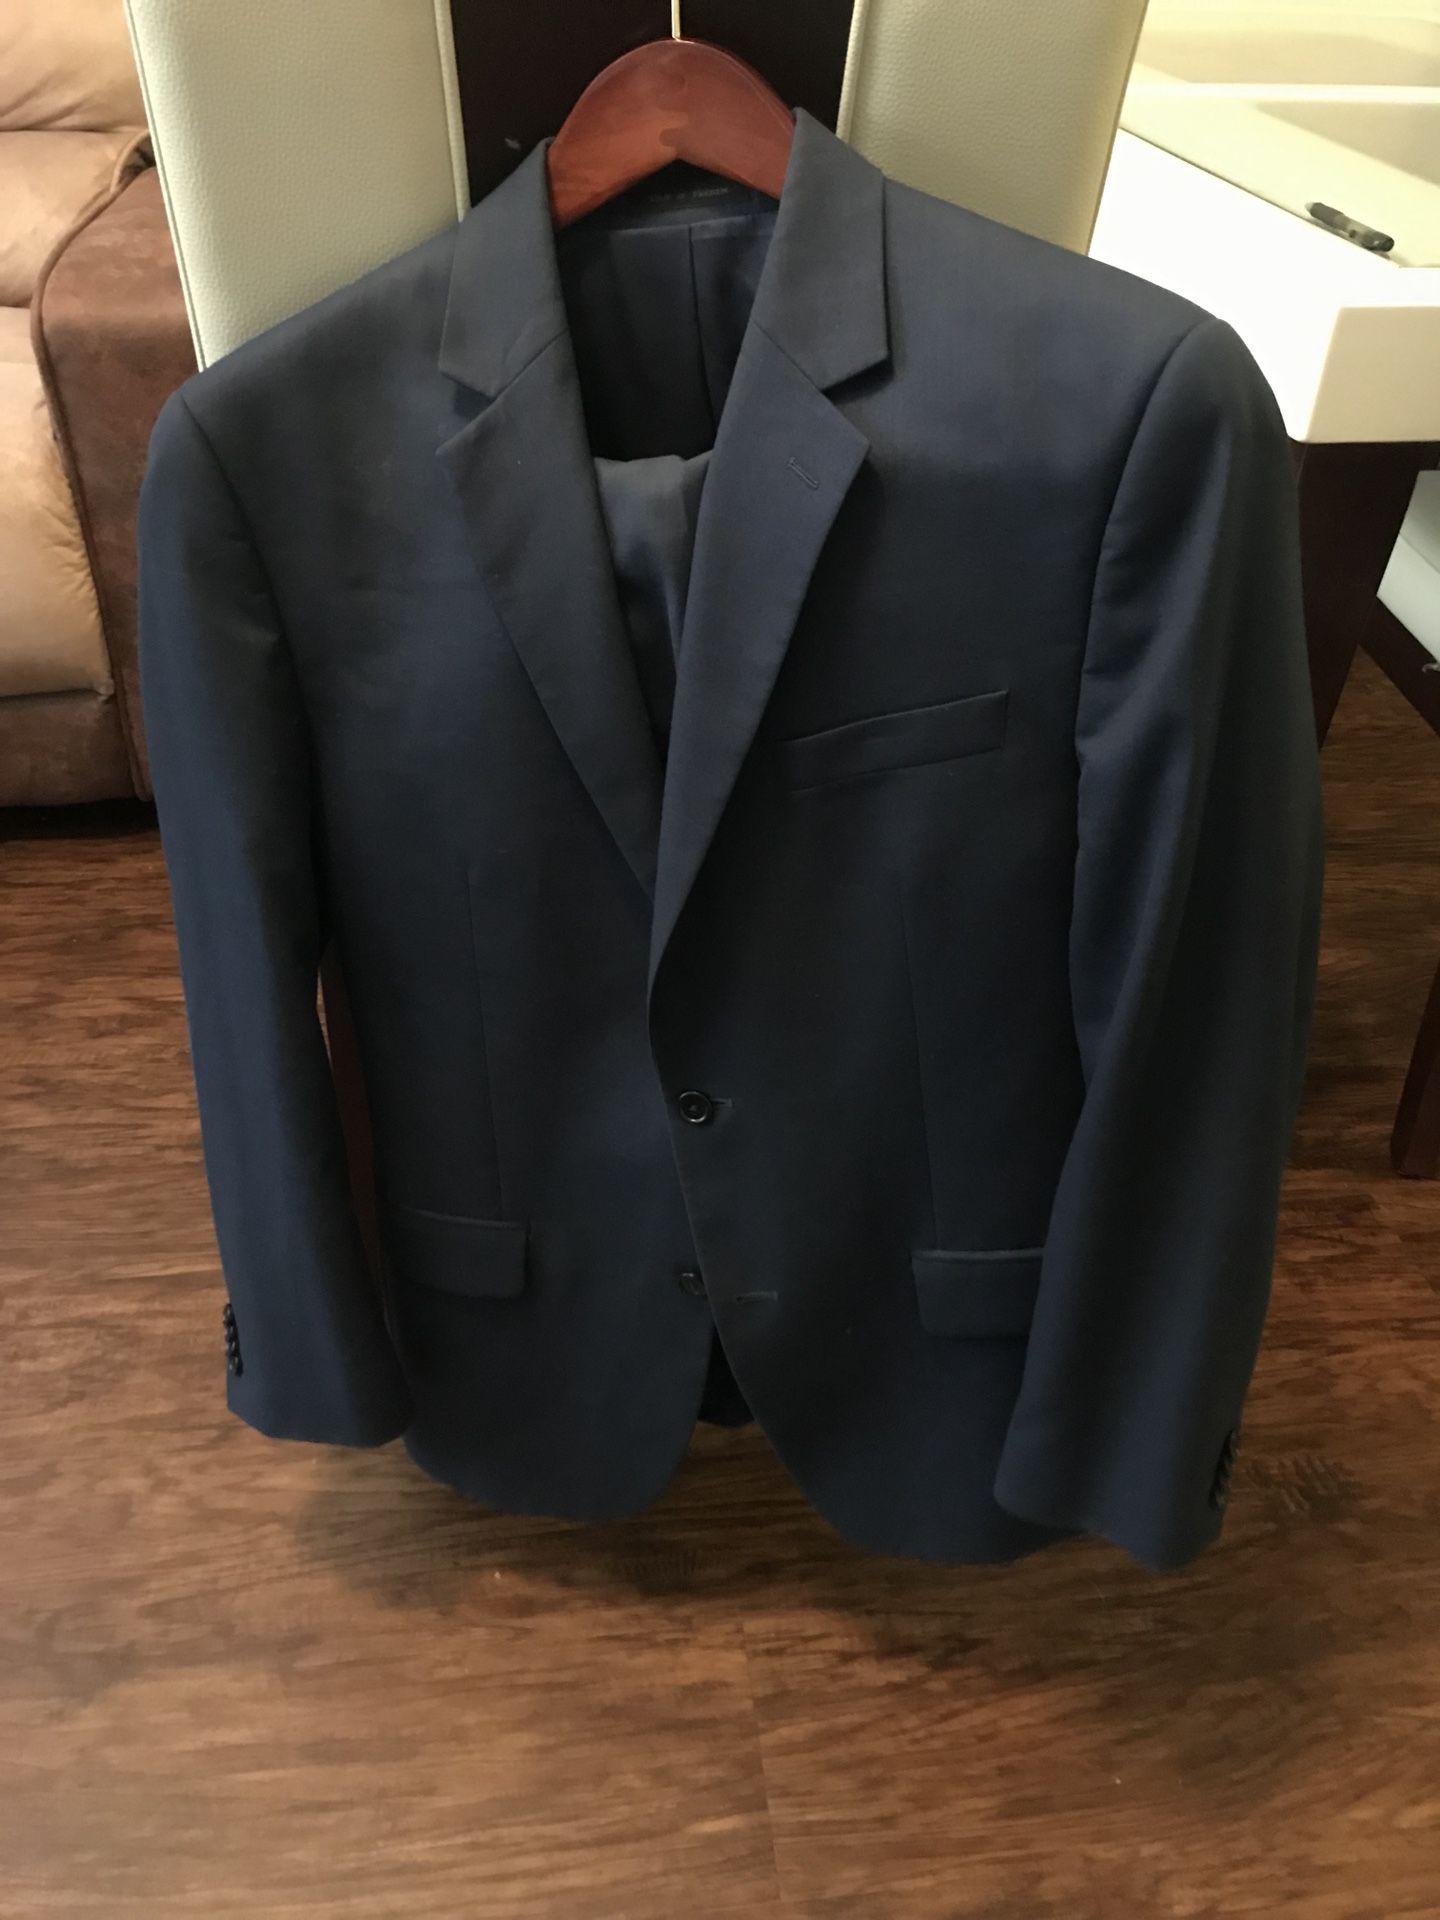 40R Michael Kors Suit